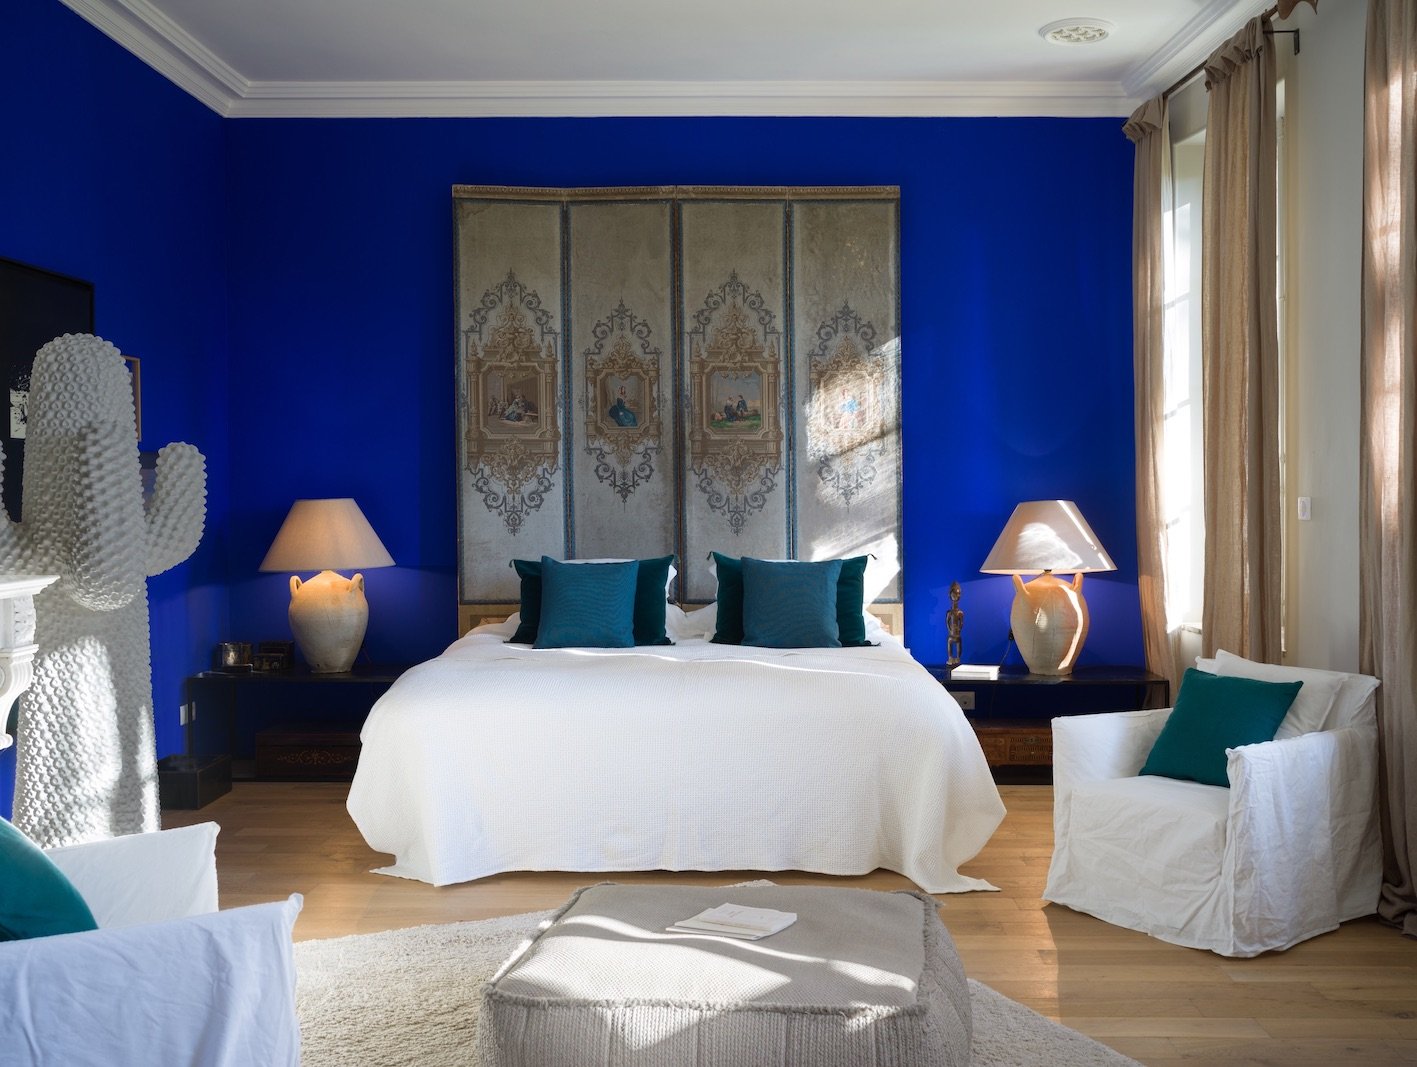 Где живут синие. Спальня в сине белых тонах. Спальня в синем цвете. Интерьер спальни в синих тонах. Синий цвет в интерьере спальни.